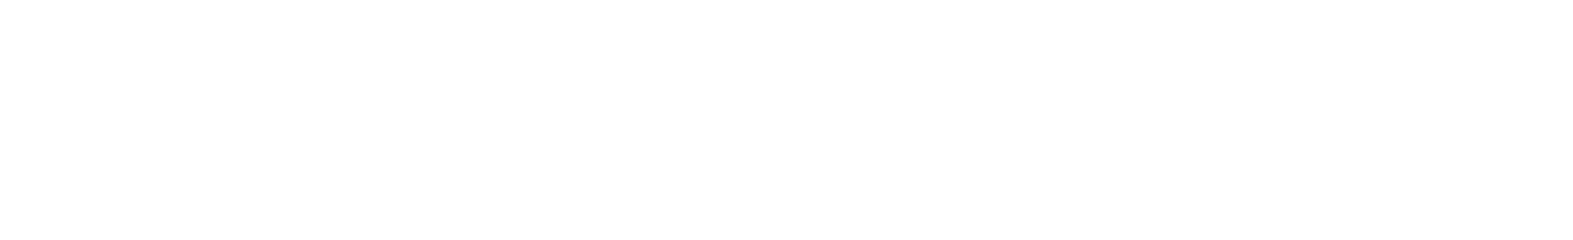 Steve Madden
 logo large for dark backgrounds (transparent PNG)